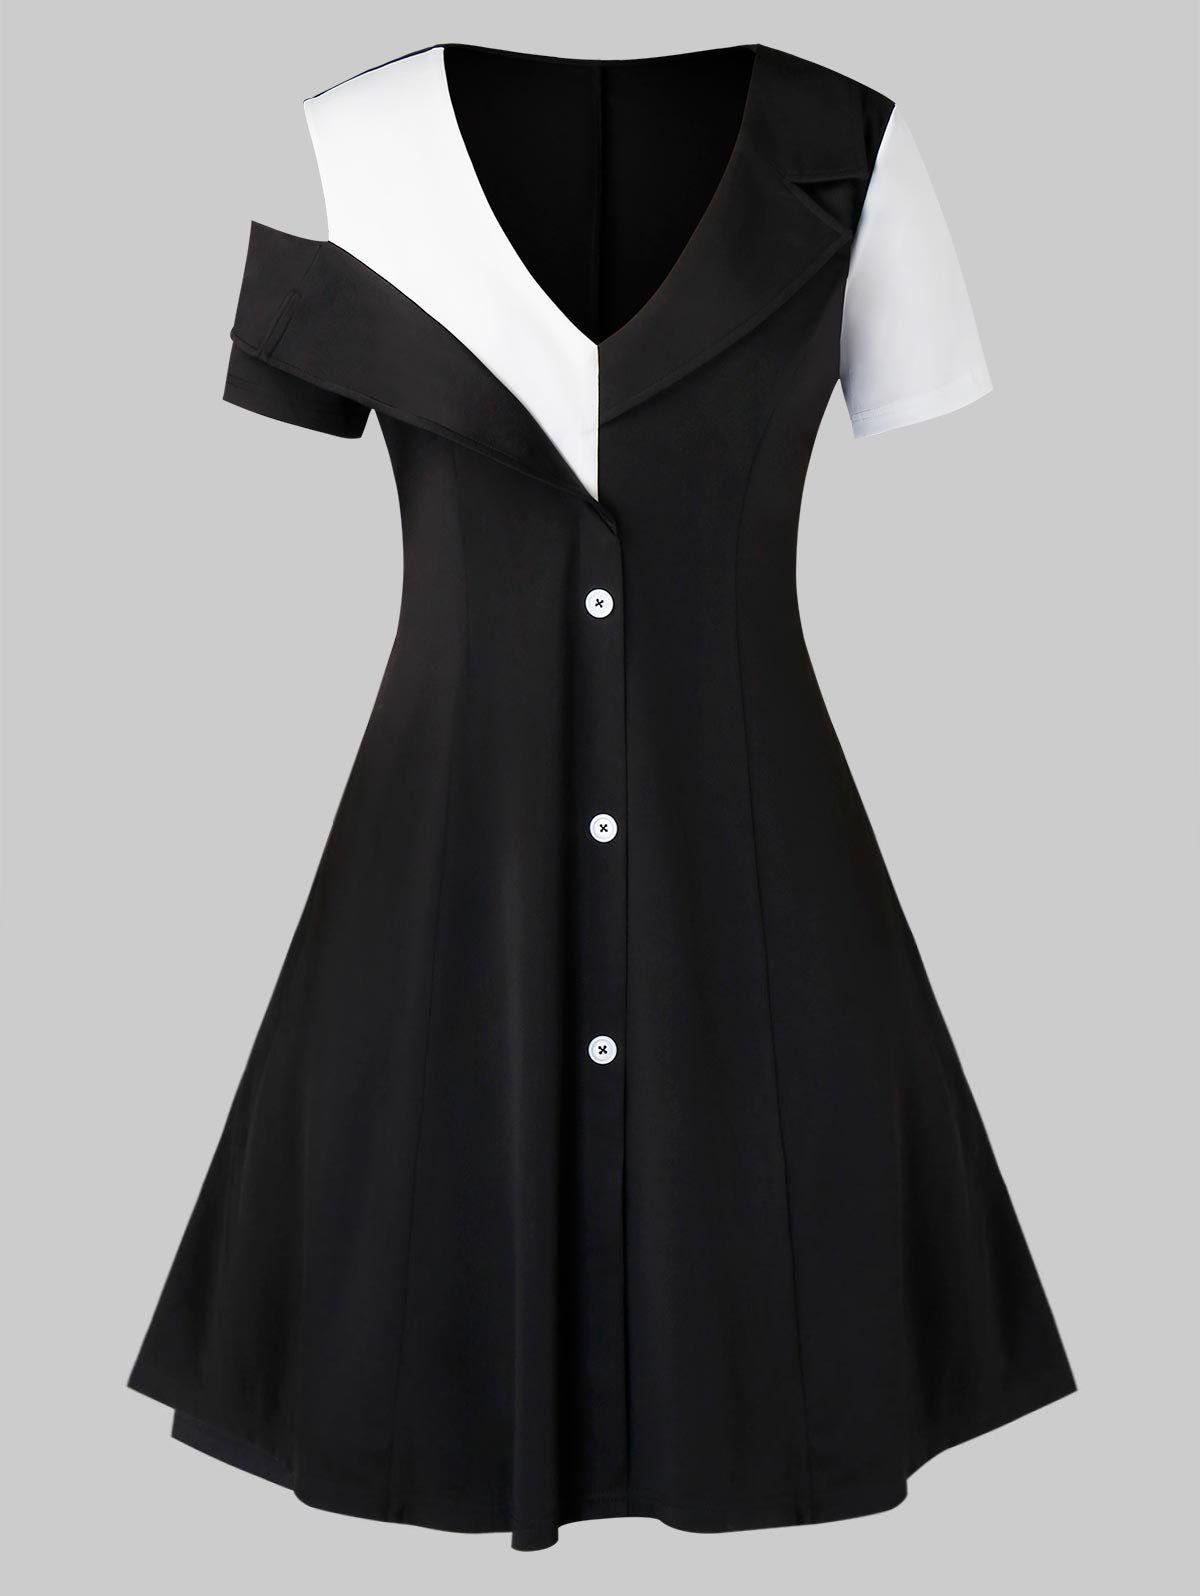 Plus Size Low Cut Two Tone Open Shoulder Dress - BLACK M